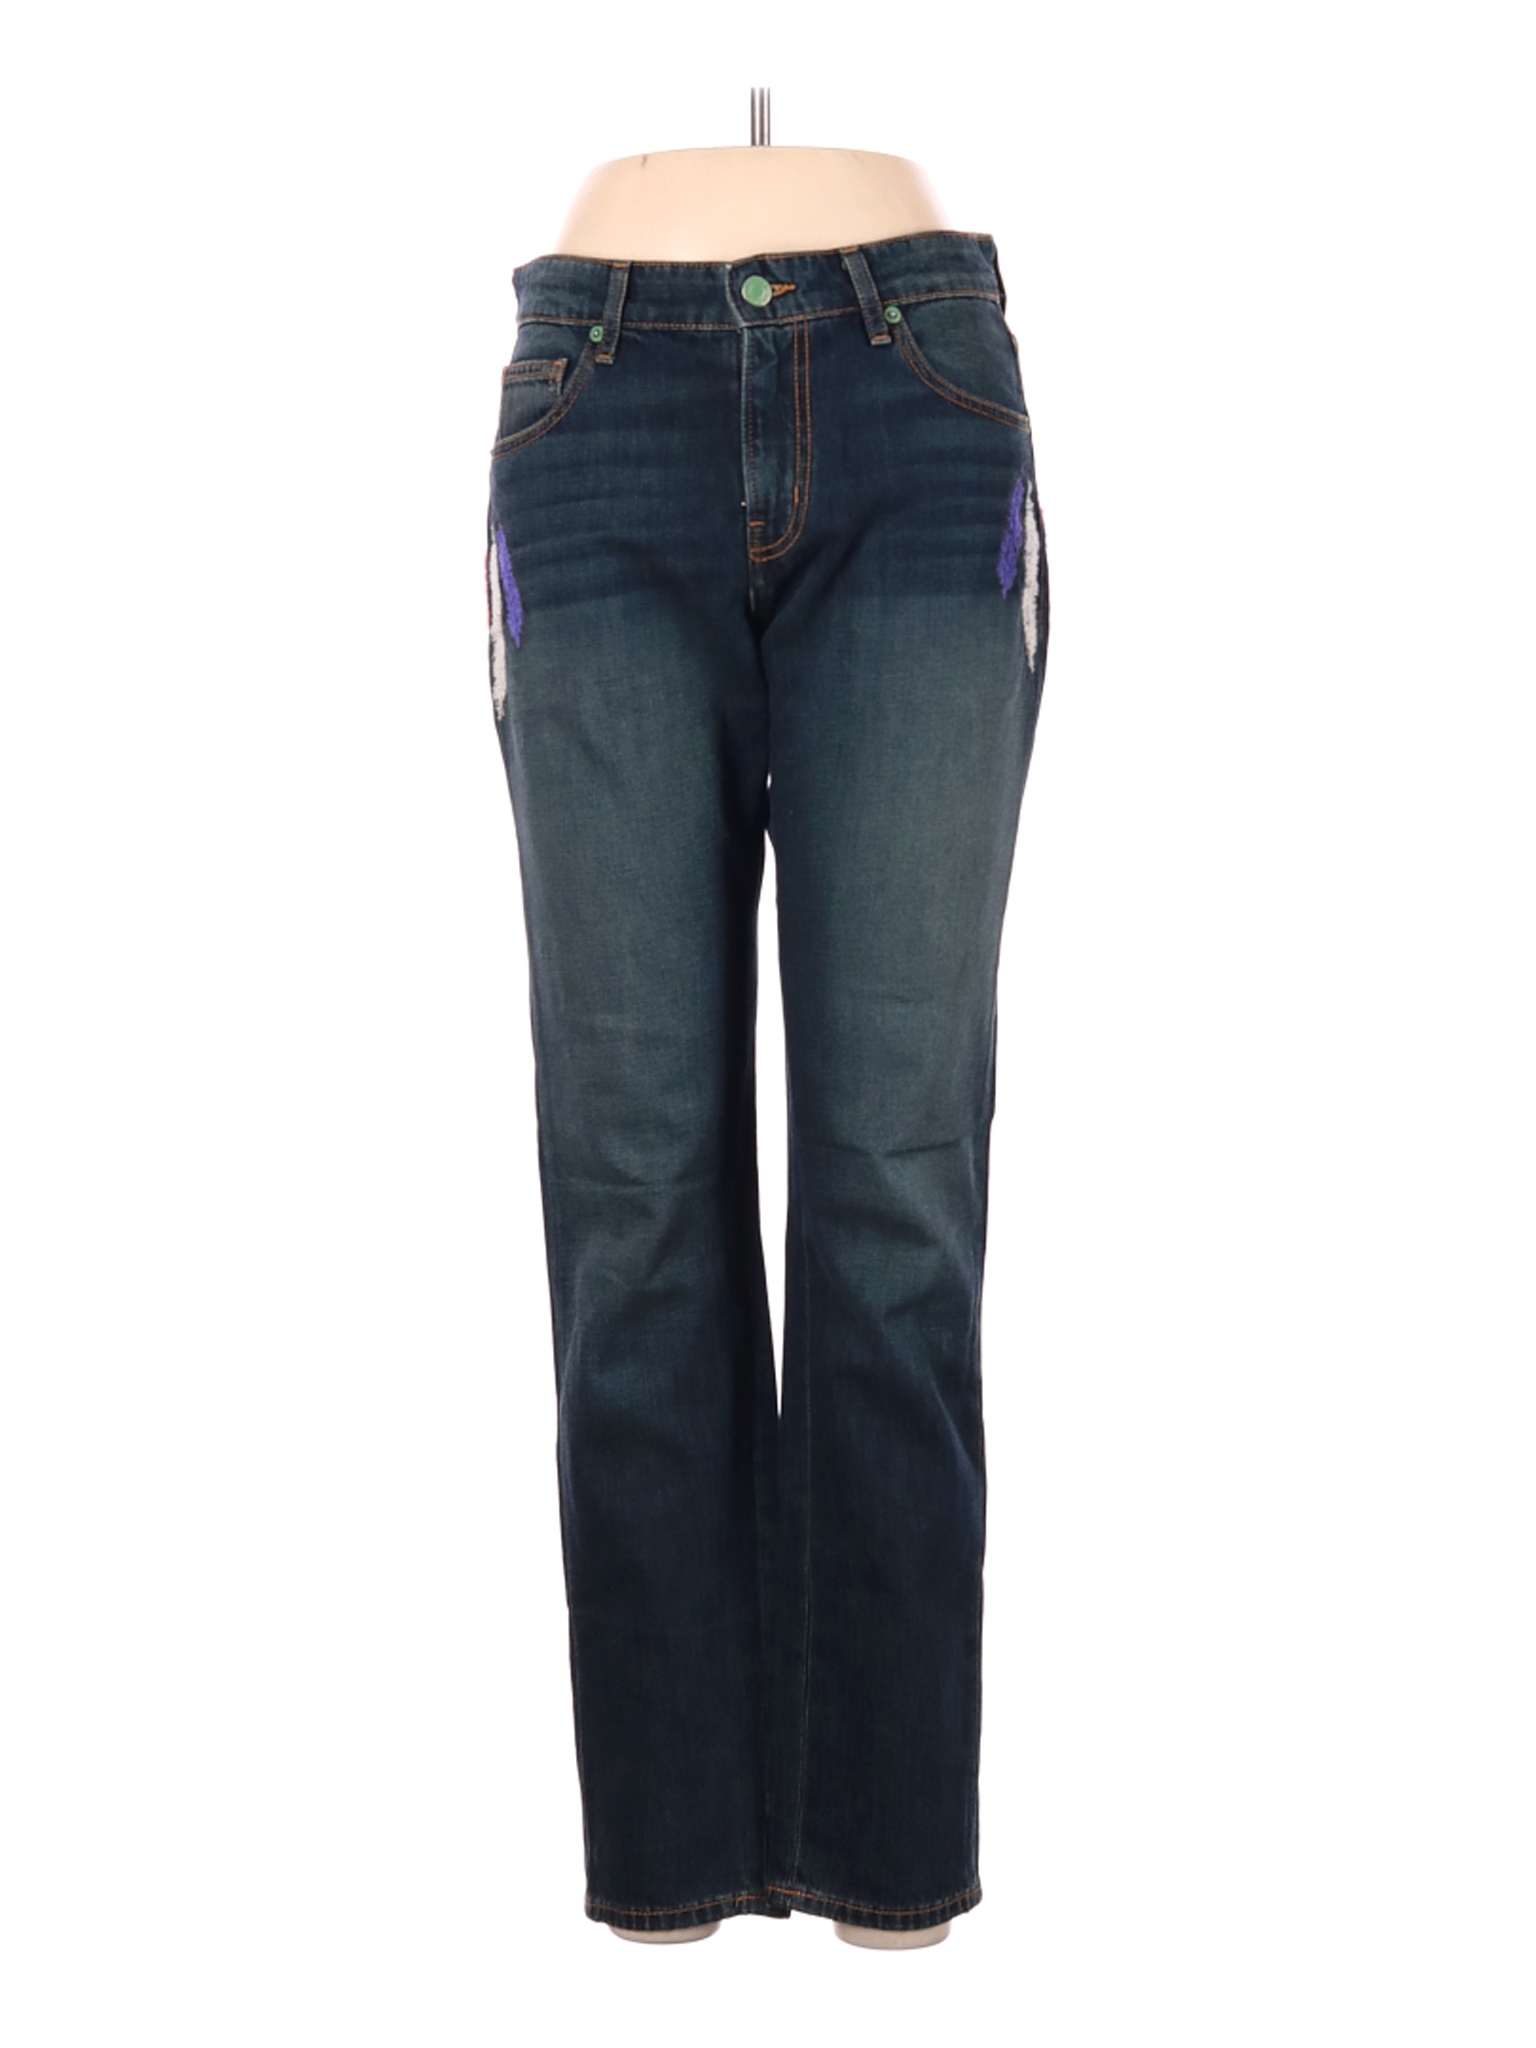 Sandrine Rose Women Blue Jeans 25W | eBay